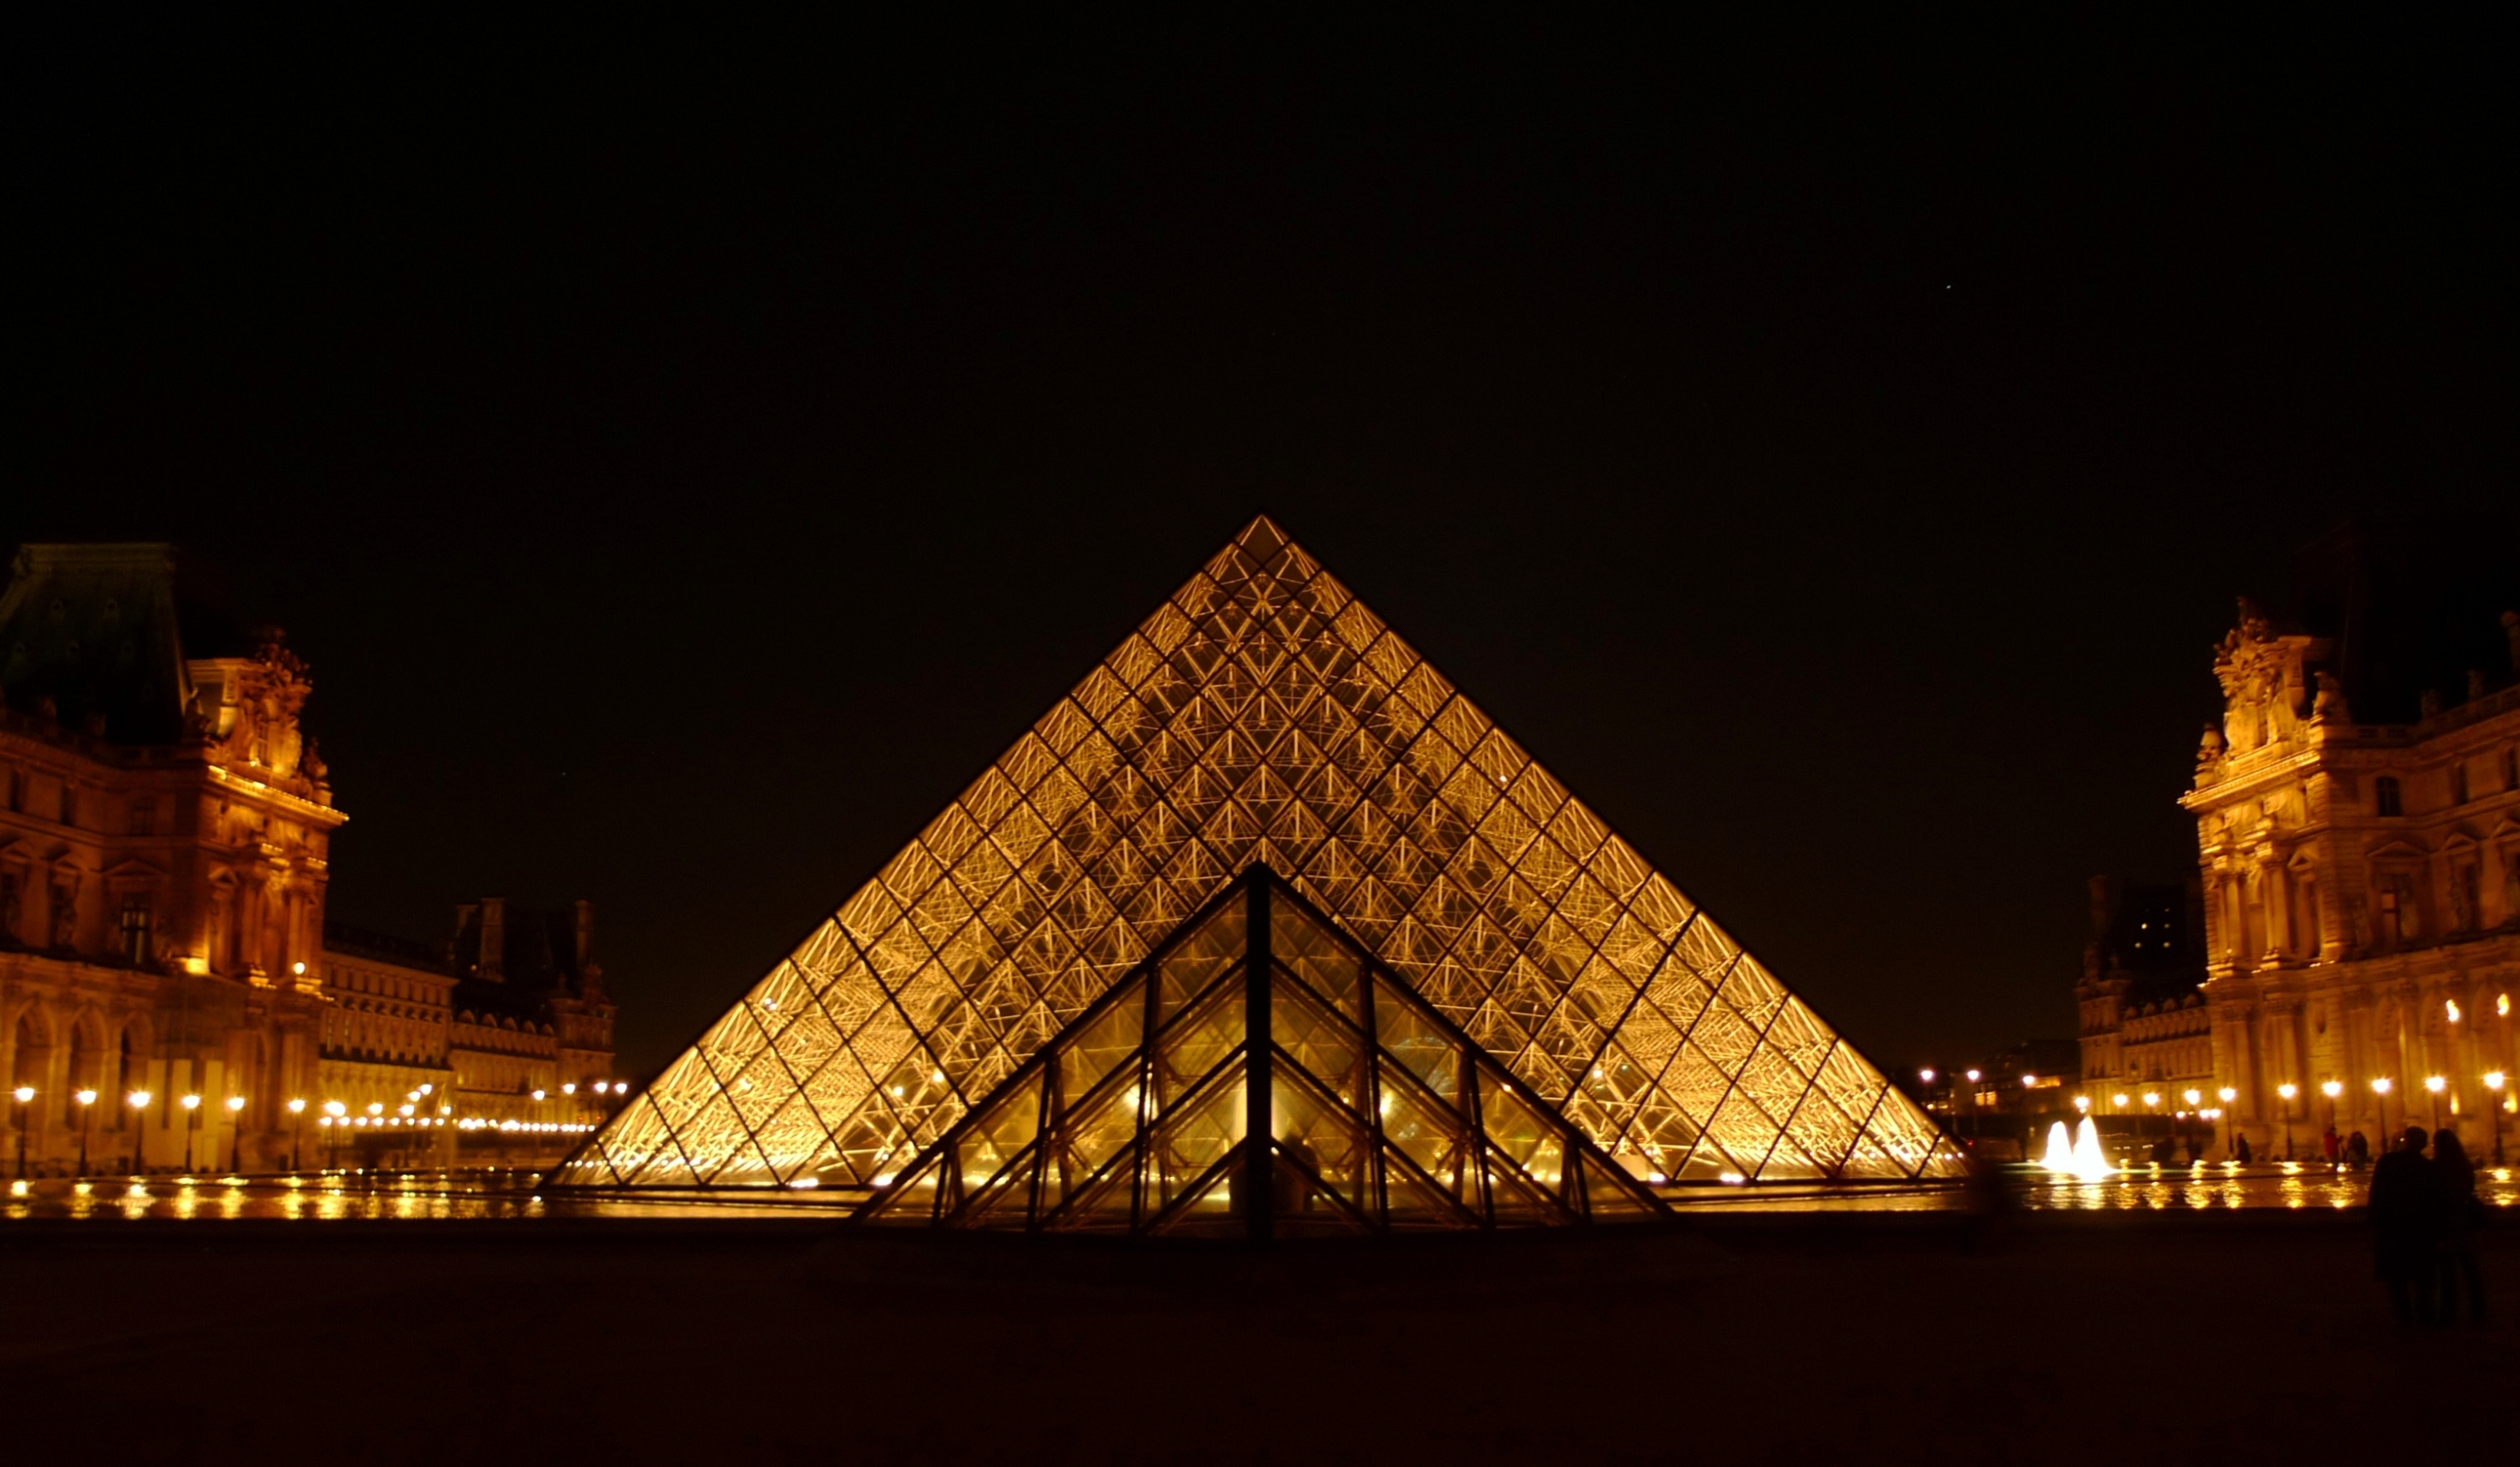 夜色中的玻璃金字塔显得更有气场,没有用三脚架,手持拍摄